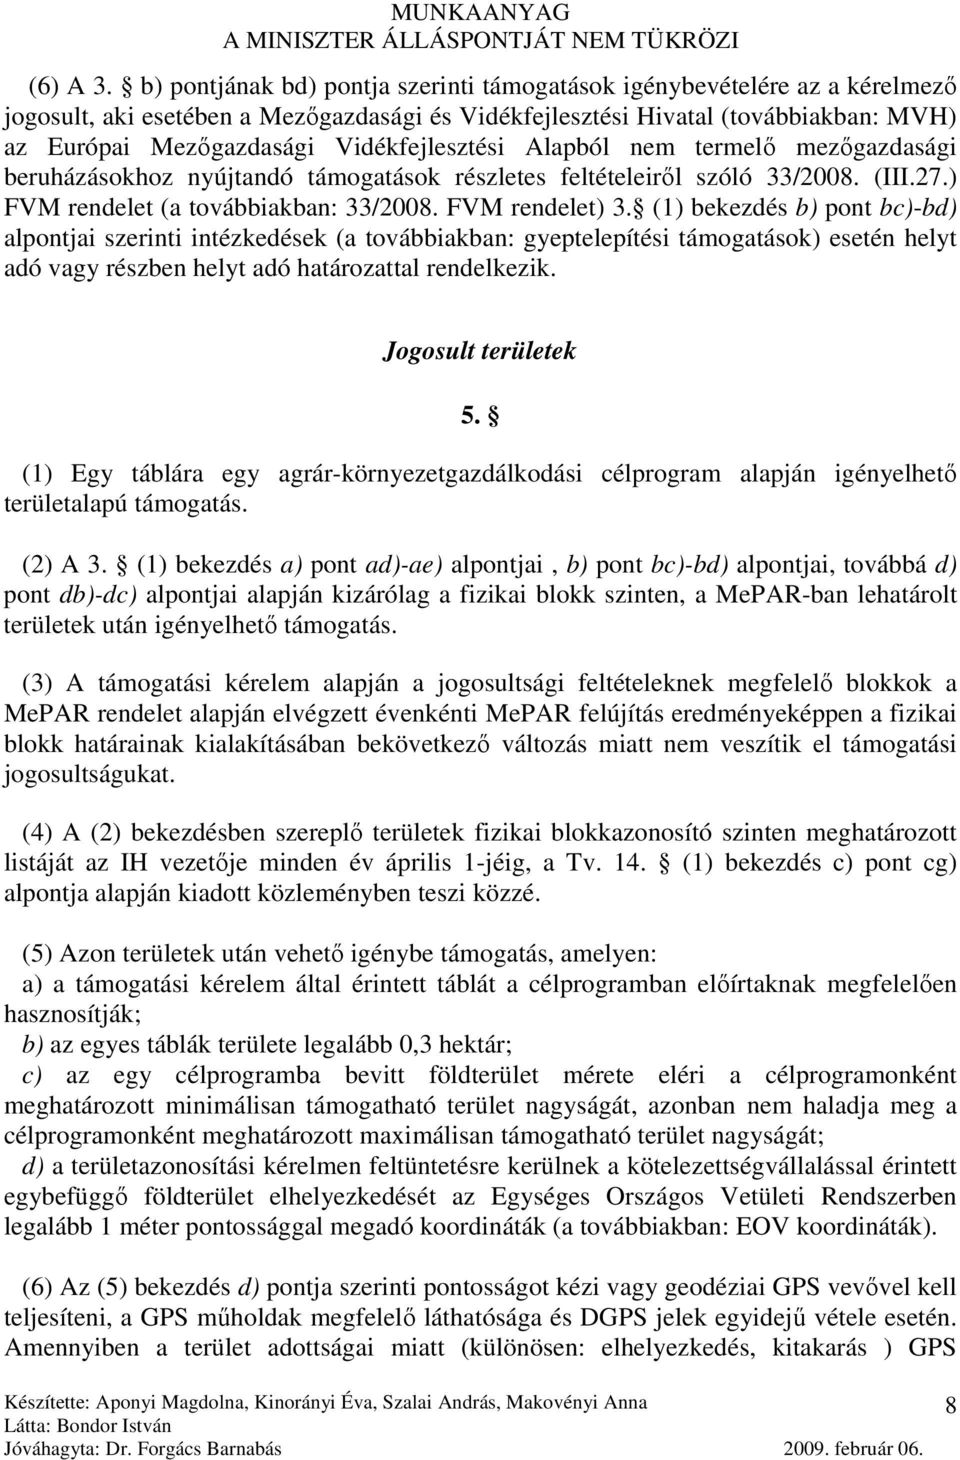 Vidékfejlesztési Alapból nem termelı mezıgazdasági beruházásokhoz nyújtandó támogatások részletes feltételeirıl szóló 33/2008. (III.27.) FVM rendelet (a továbbiakban: 33/2008. FVM rendelet) 3.